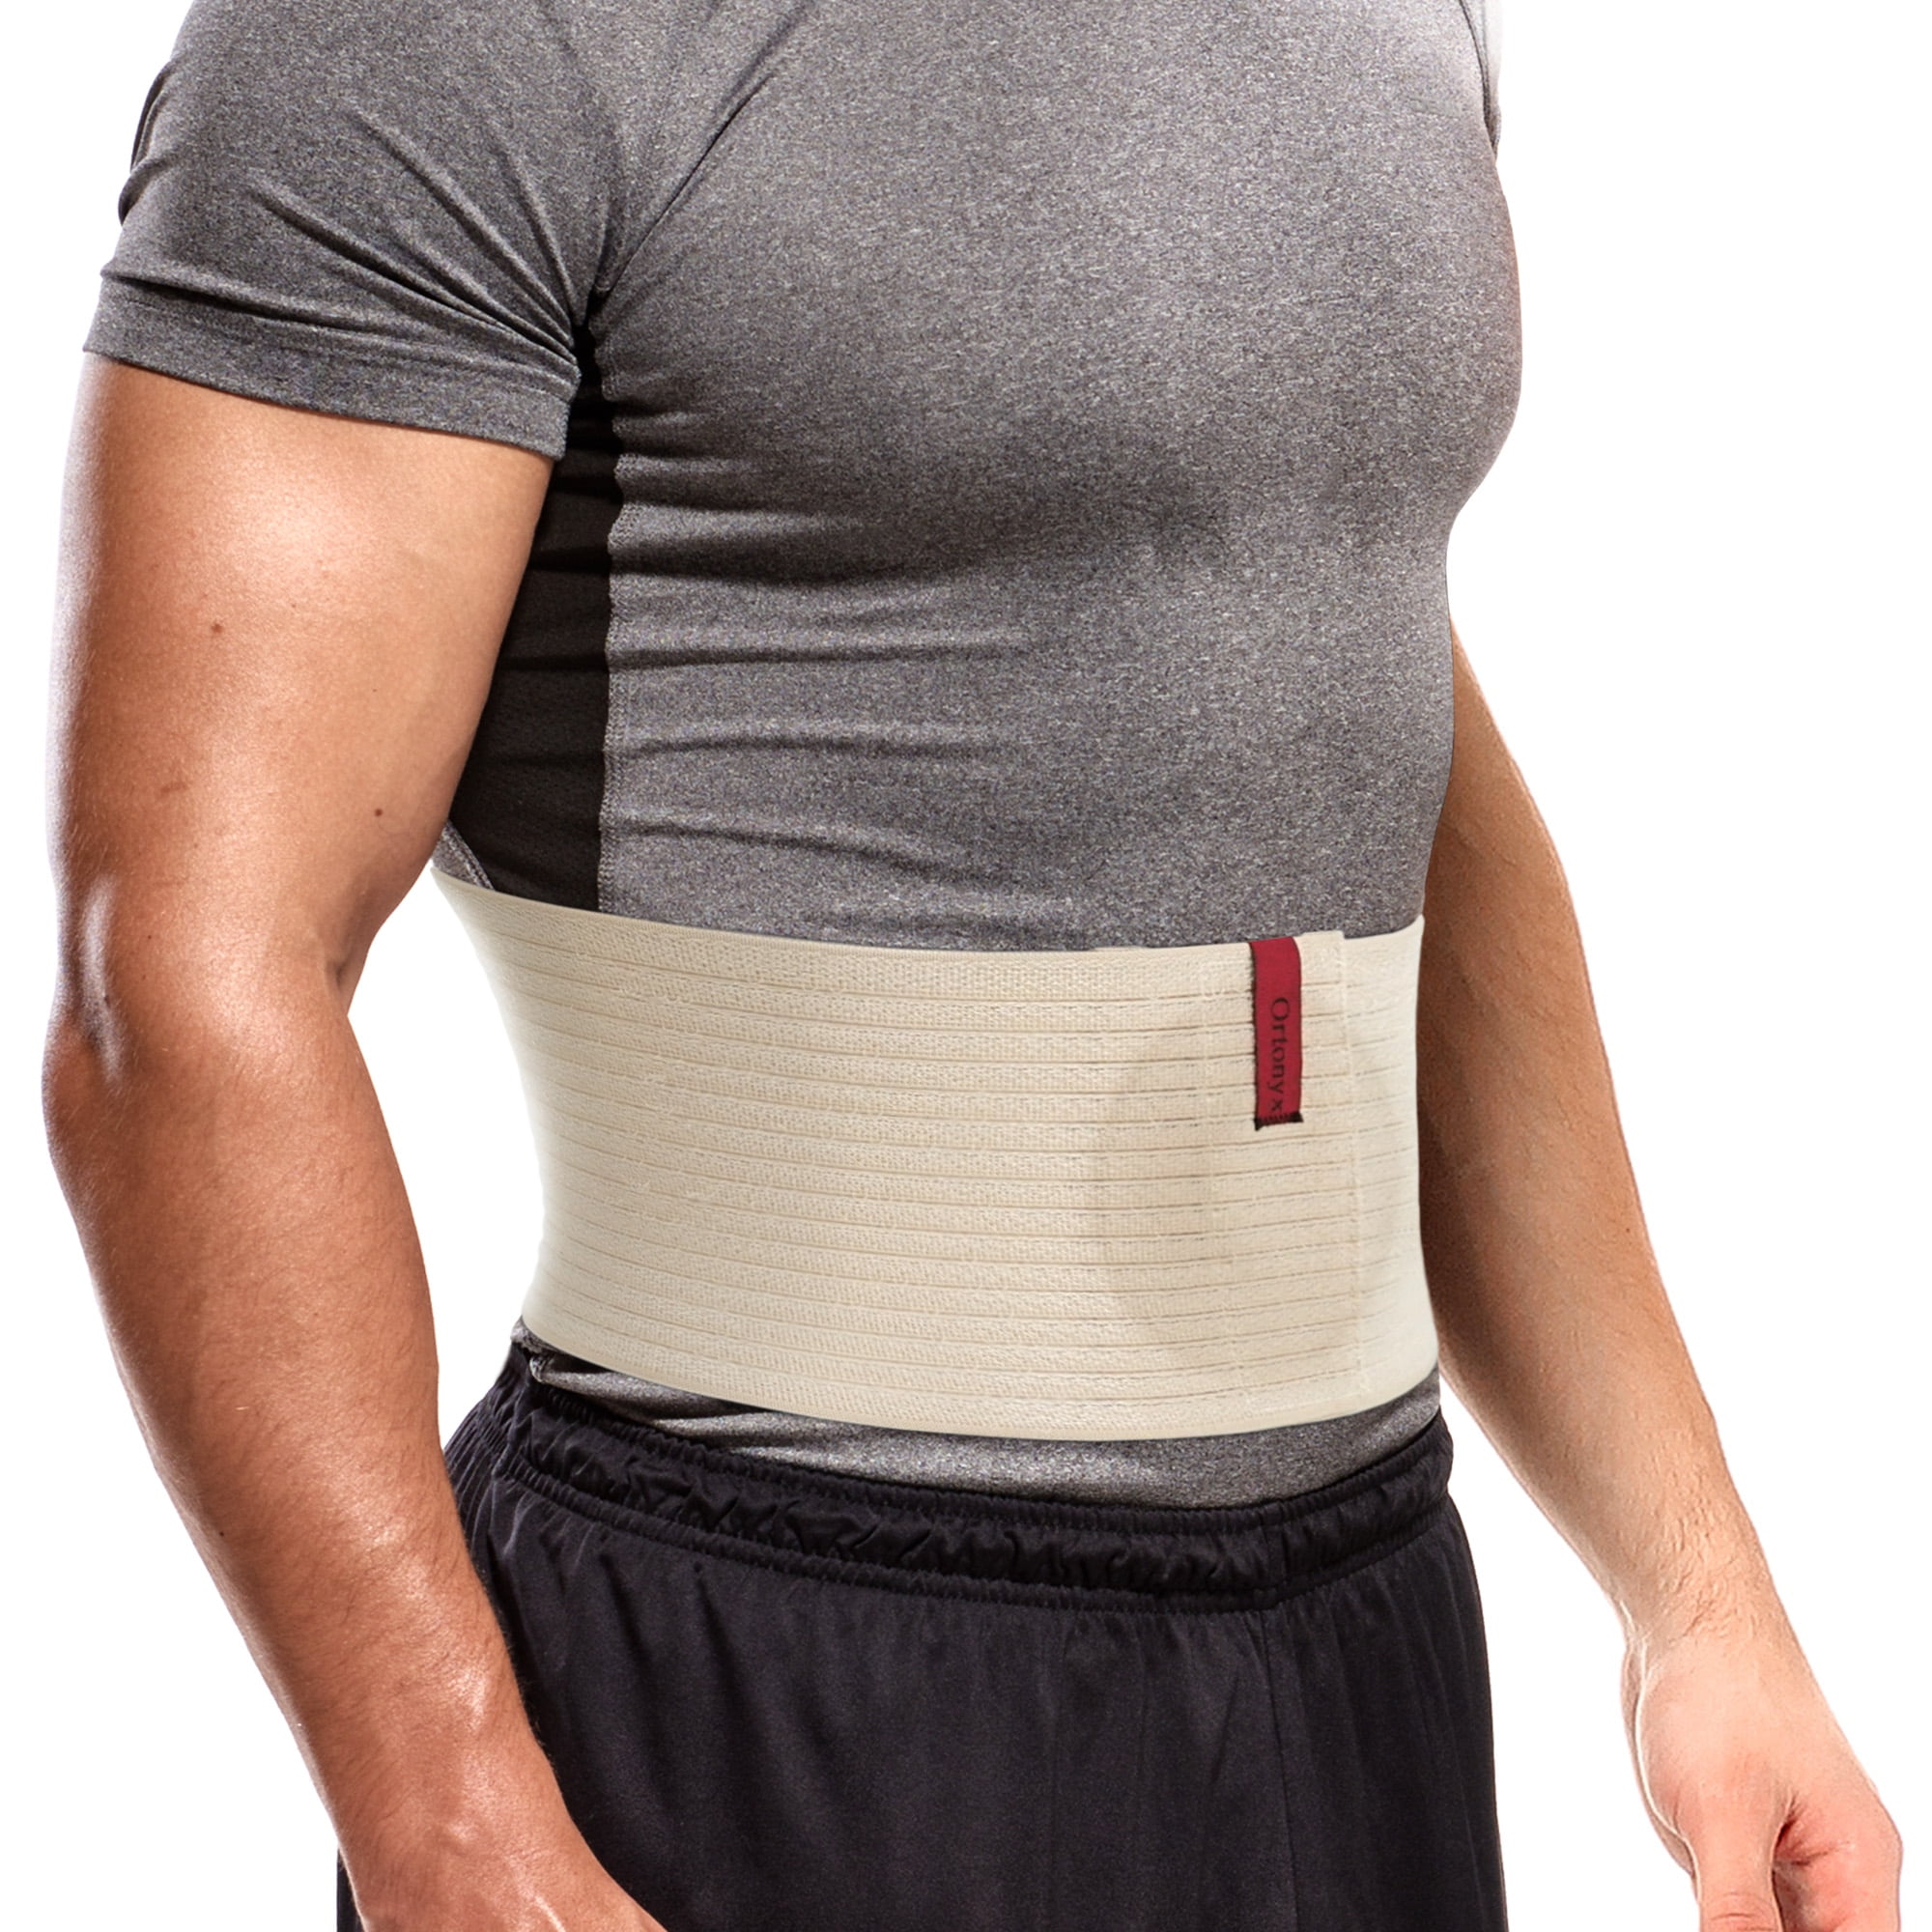 belly button hernia belt